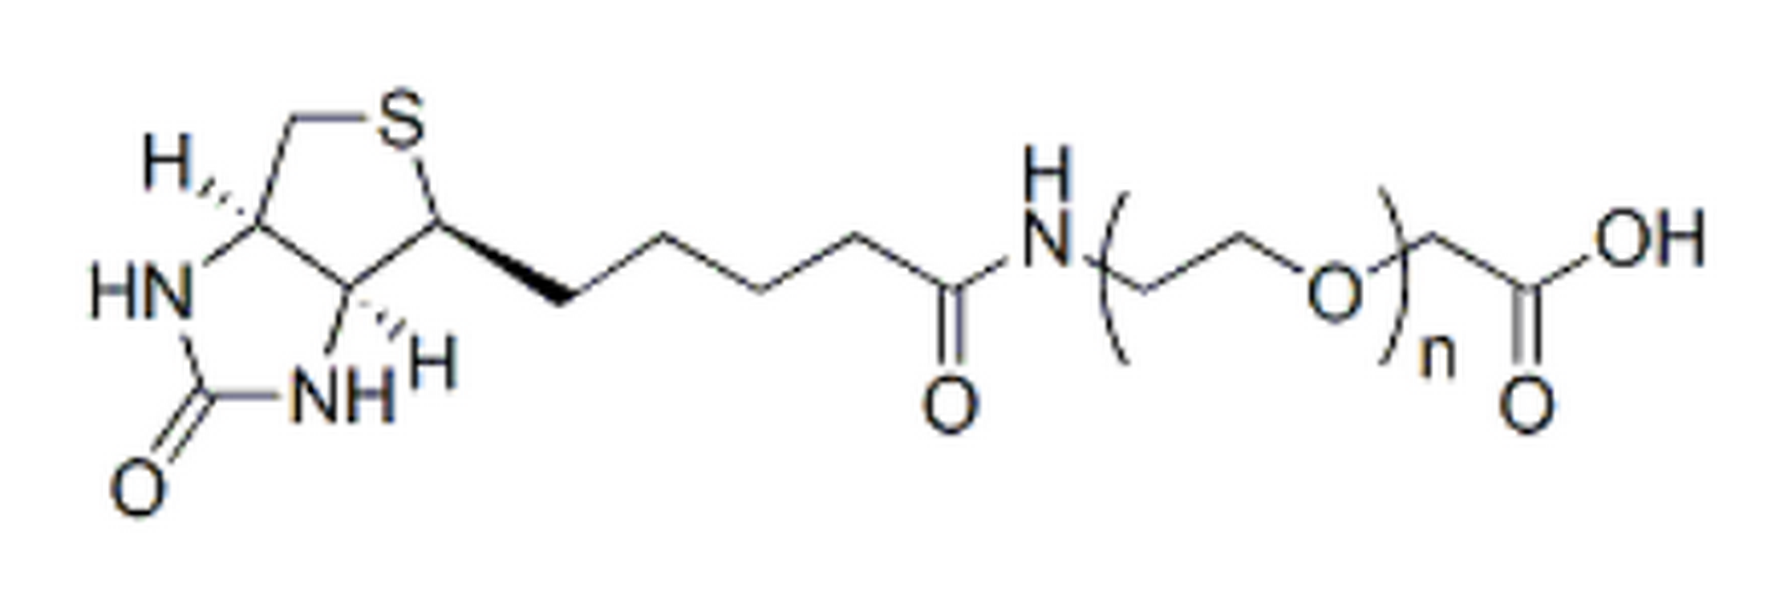 Biotin-PEG-CH2CO2H, MW 1K